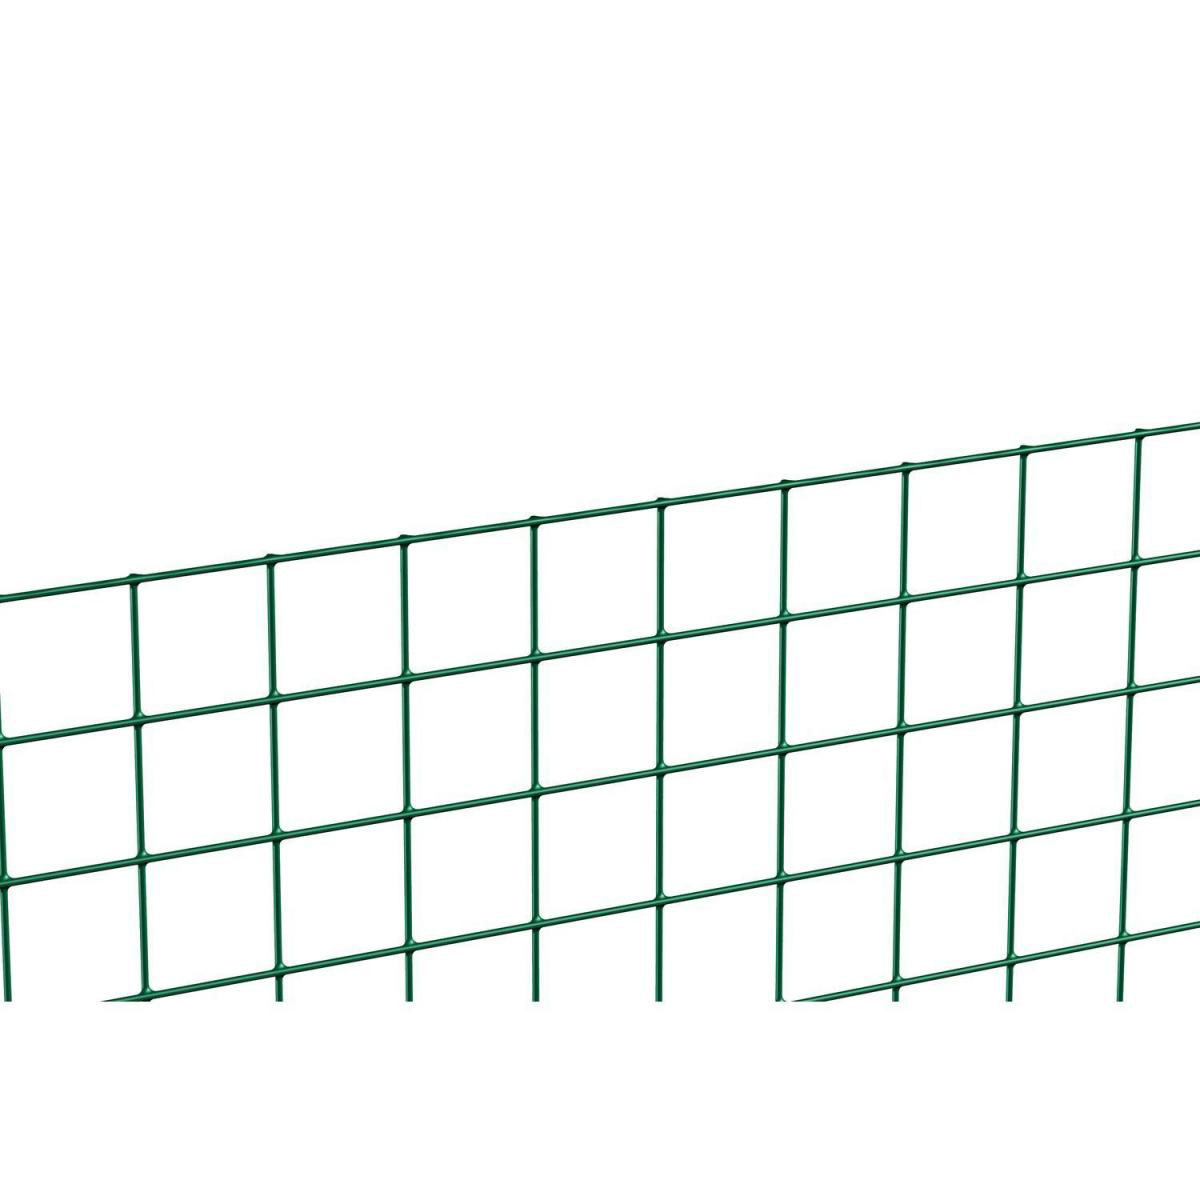 Schweißgitter grün, Länge 5 Meter, Höhe 50 cm, Masche 12,7x12,7 mm